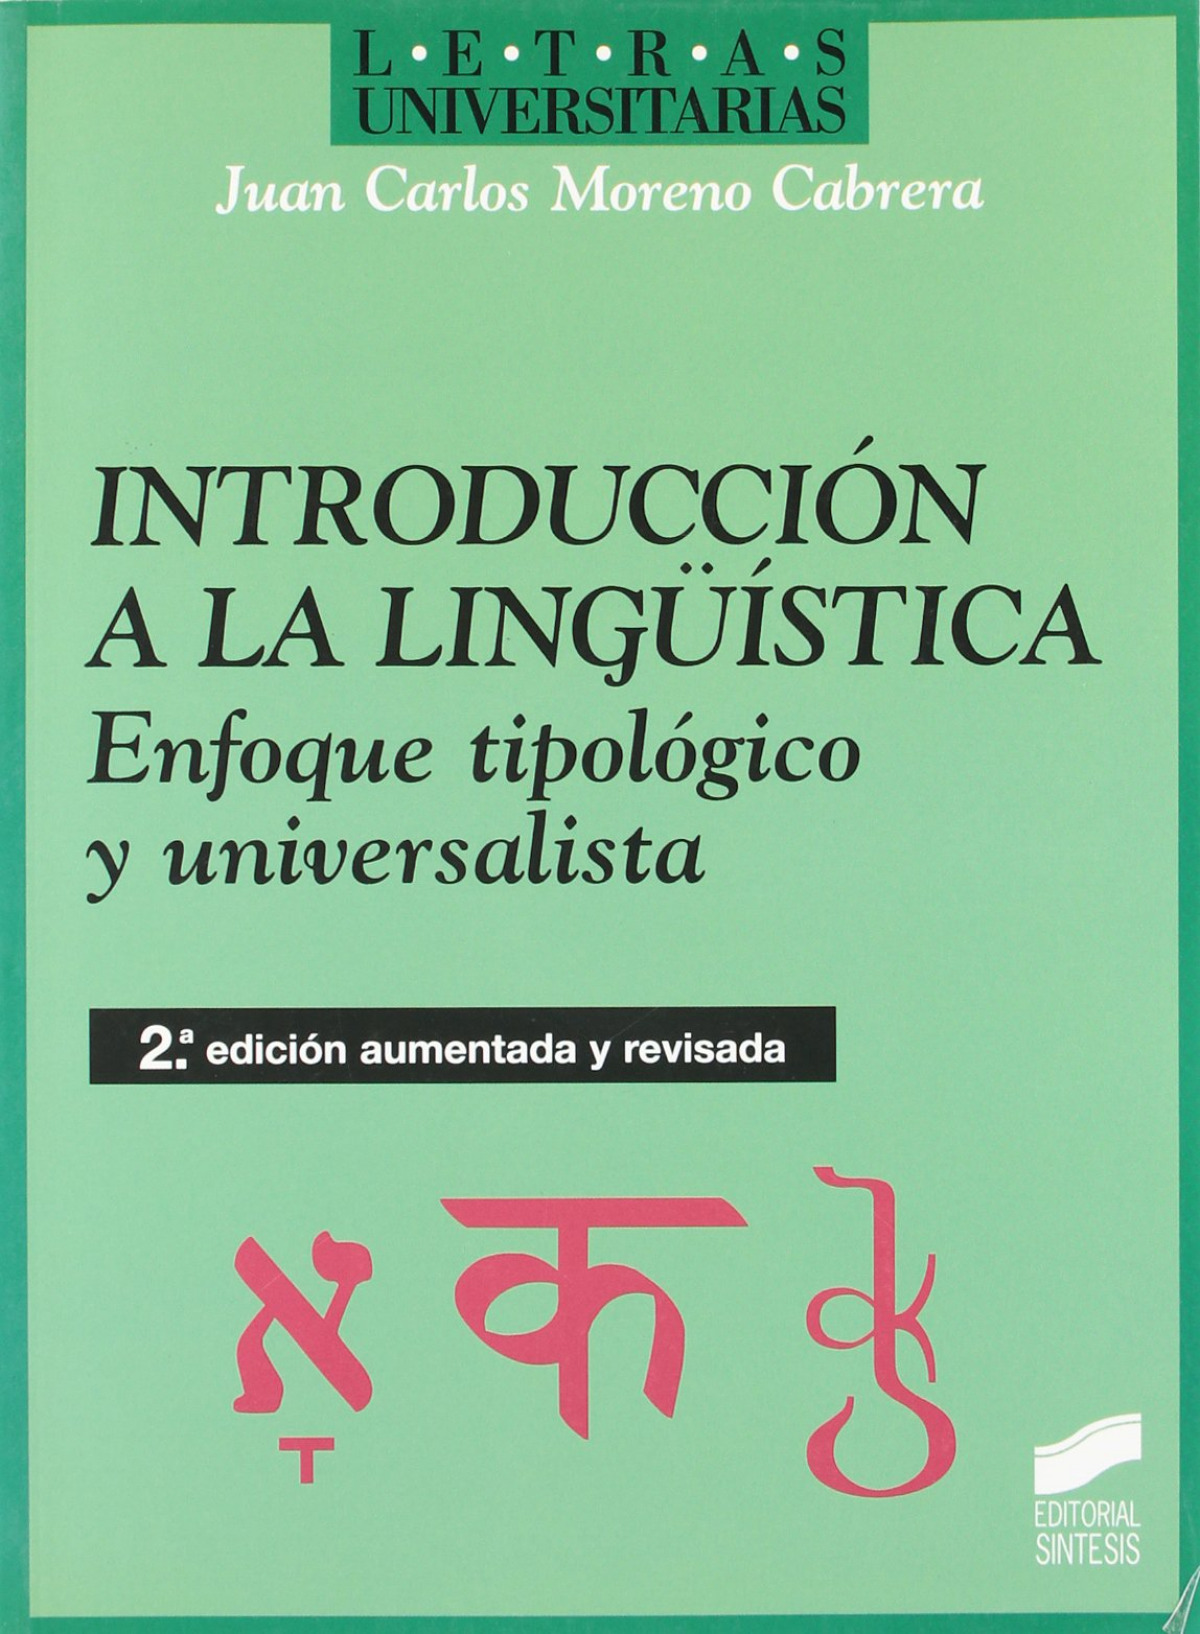 Instroducción lingüistica Enfoque tipológico y universalista - Moreno Cabrera, Juan Carlos